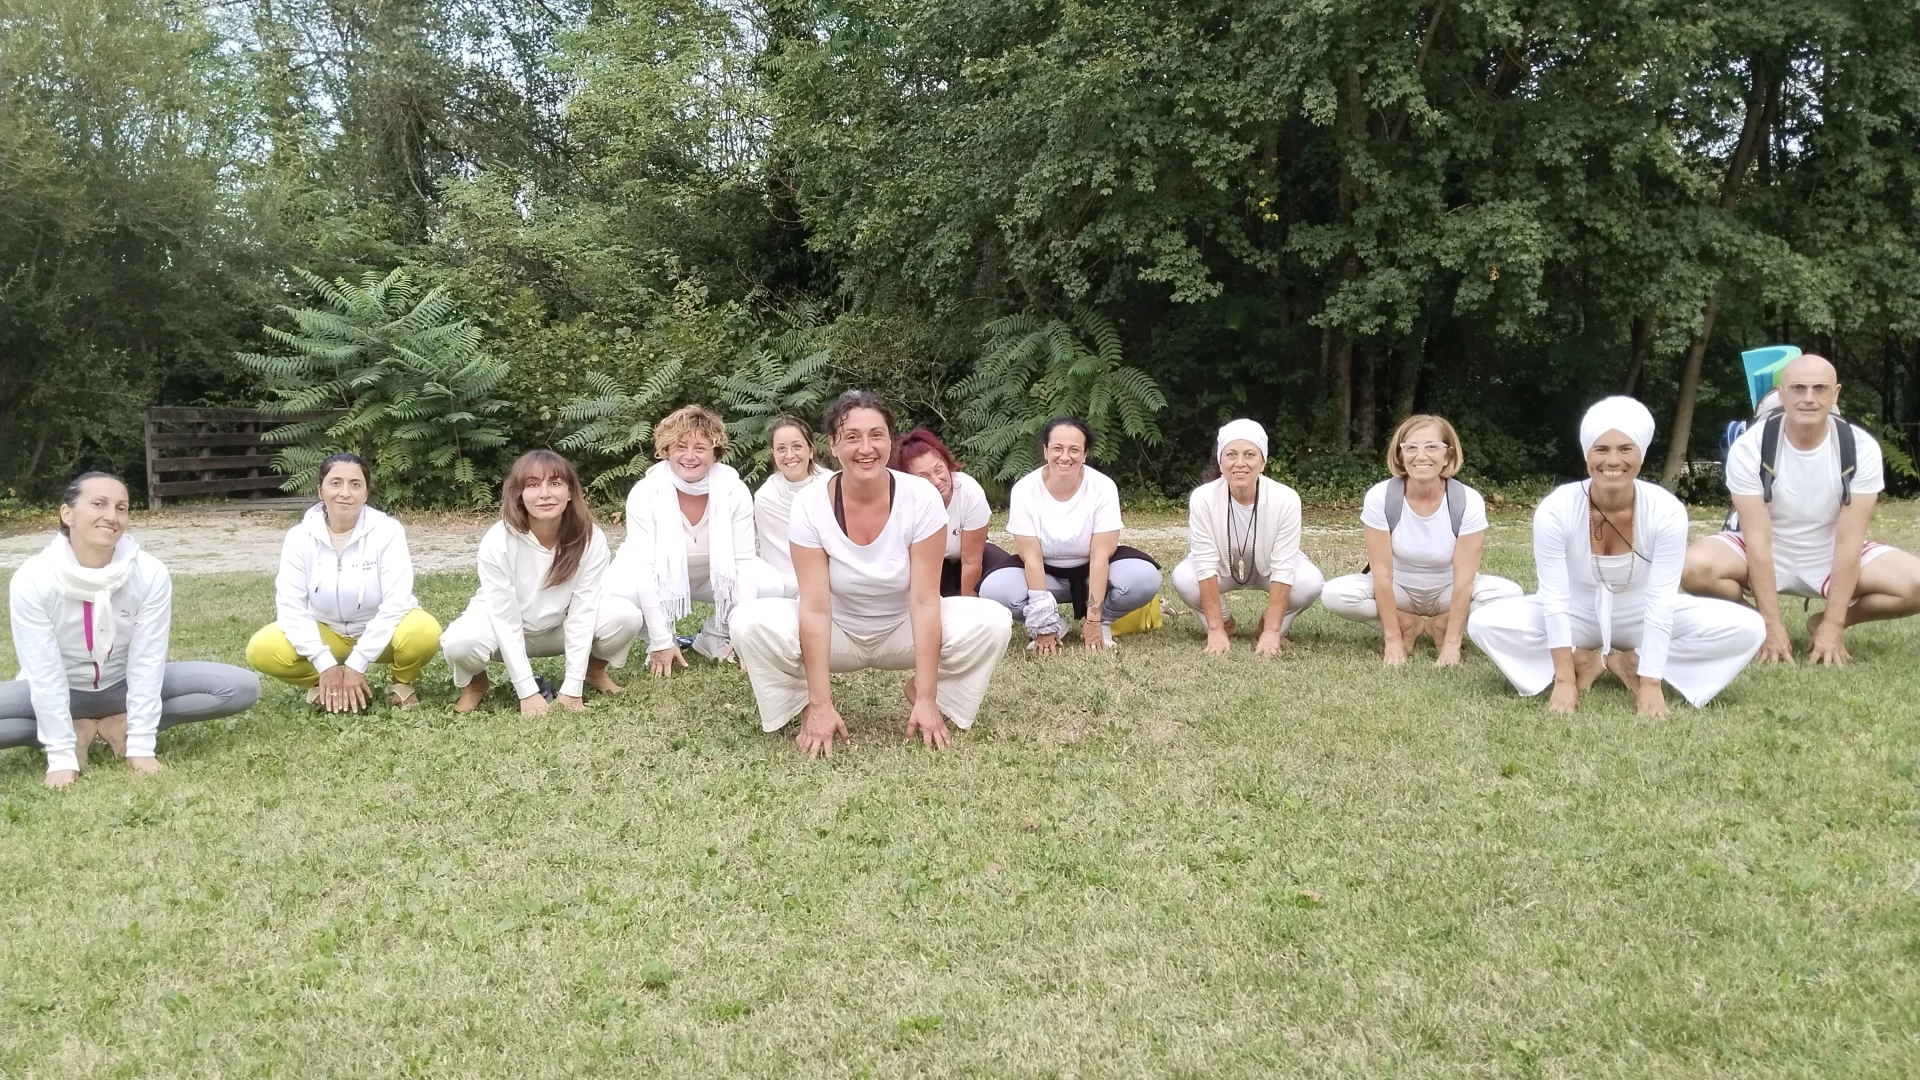 Ritiro Yoga Molise e’ Natura-Autunno per Connettersi. Appuntamento organizzato da Acquatica Eventi e Umbelina Mansano dal 27 al 29 ottobre.